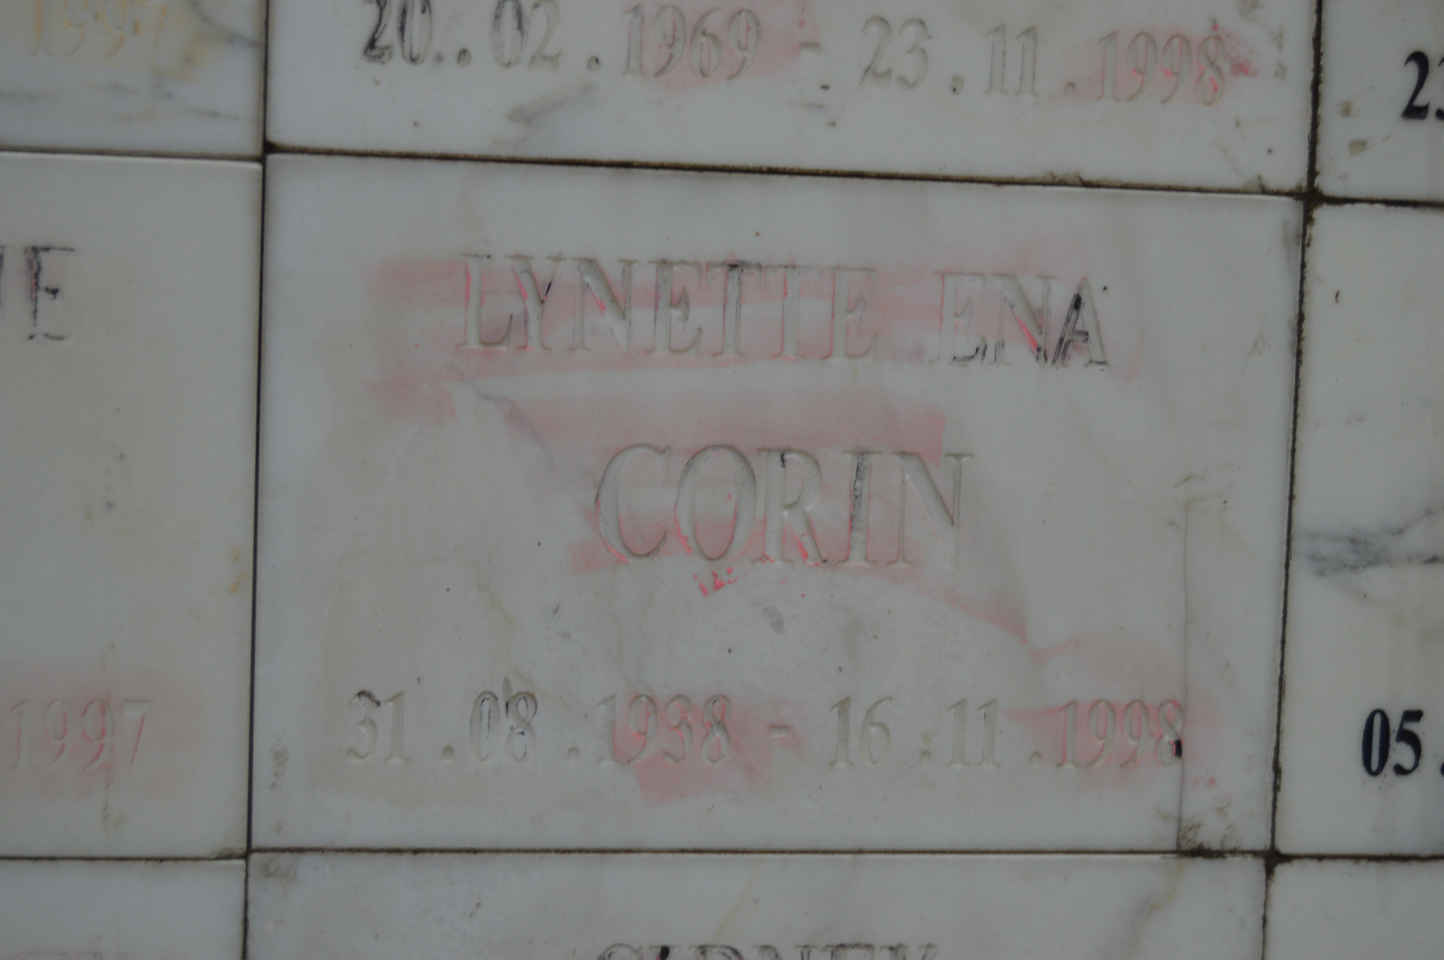 CORIN Lynette Ena 1938-1998